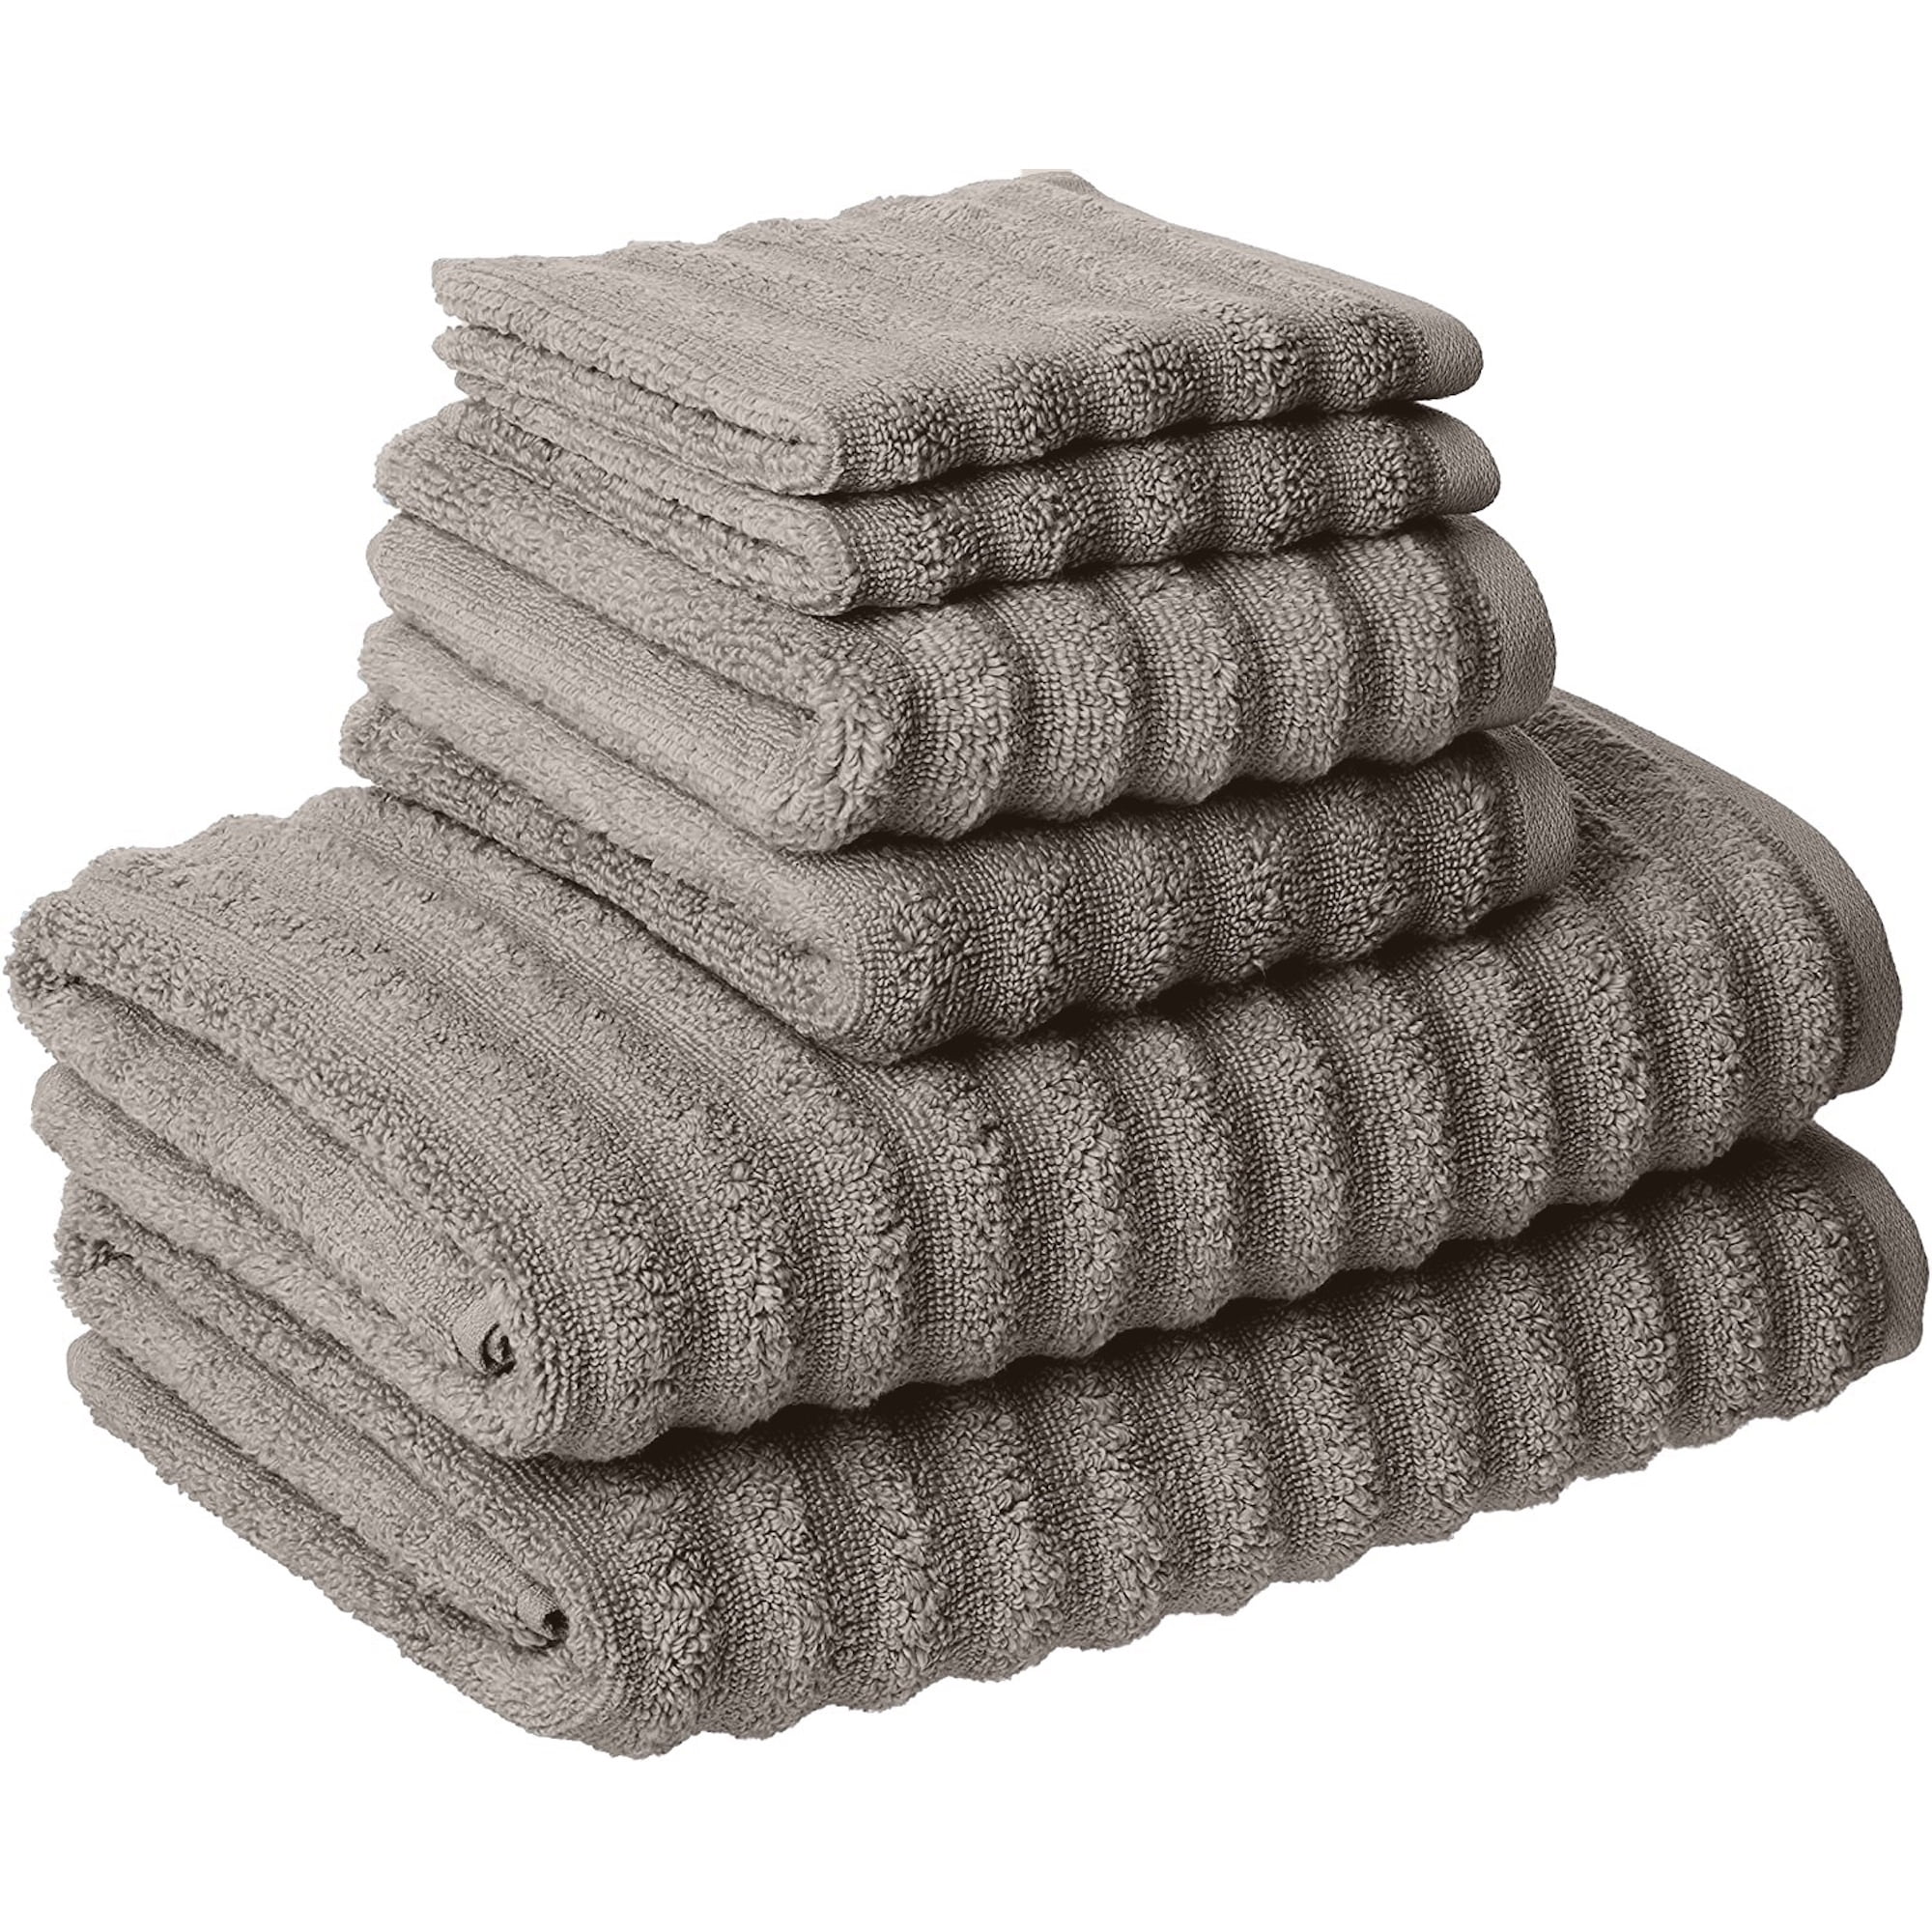 LANE LINEN Luxury Bath Towels Set - 12 Piece Set, 100% Cotton Bathroom  Towels, Zero Twist, Quick Dry Shower Towel, Absorbent Bath Towel, Soft, 4  Bath